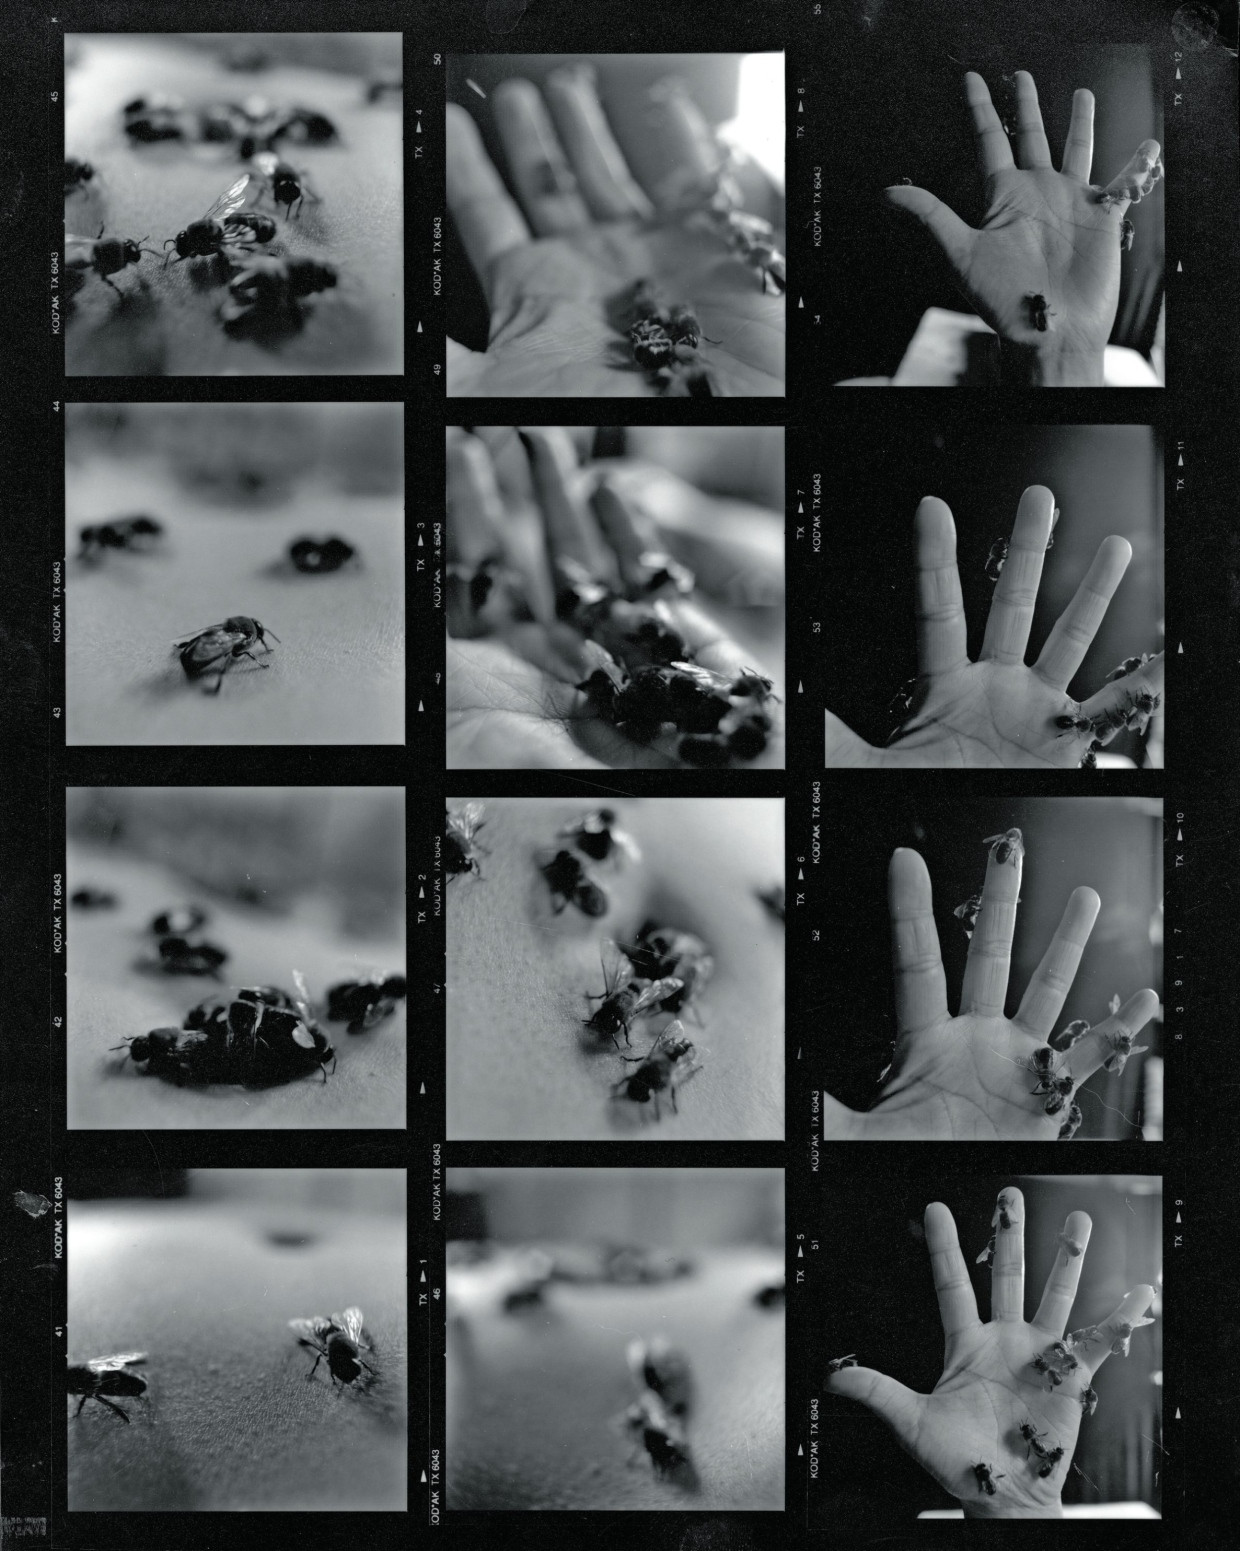 Wenn ein komplexes System auf ein anderes trifft: Miya Masaokas Videoarbeit „Adventures of the Solitary Bee“ aus dem Jahr 2000